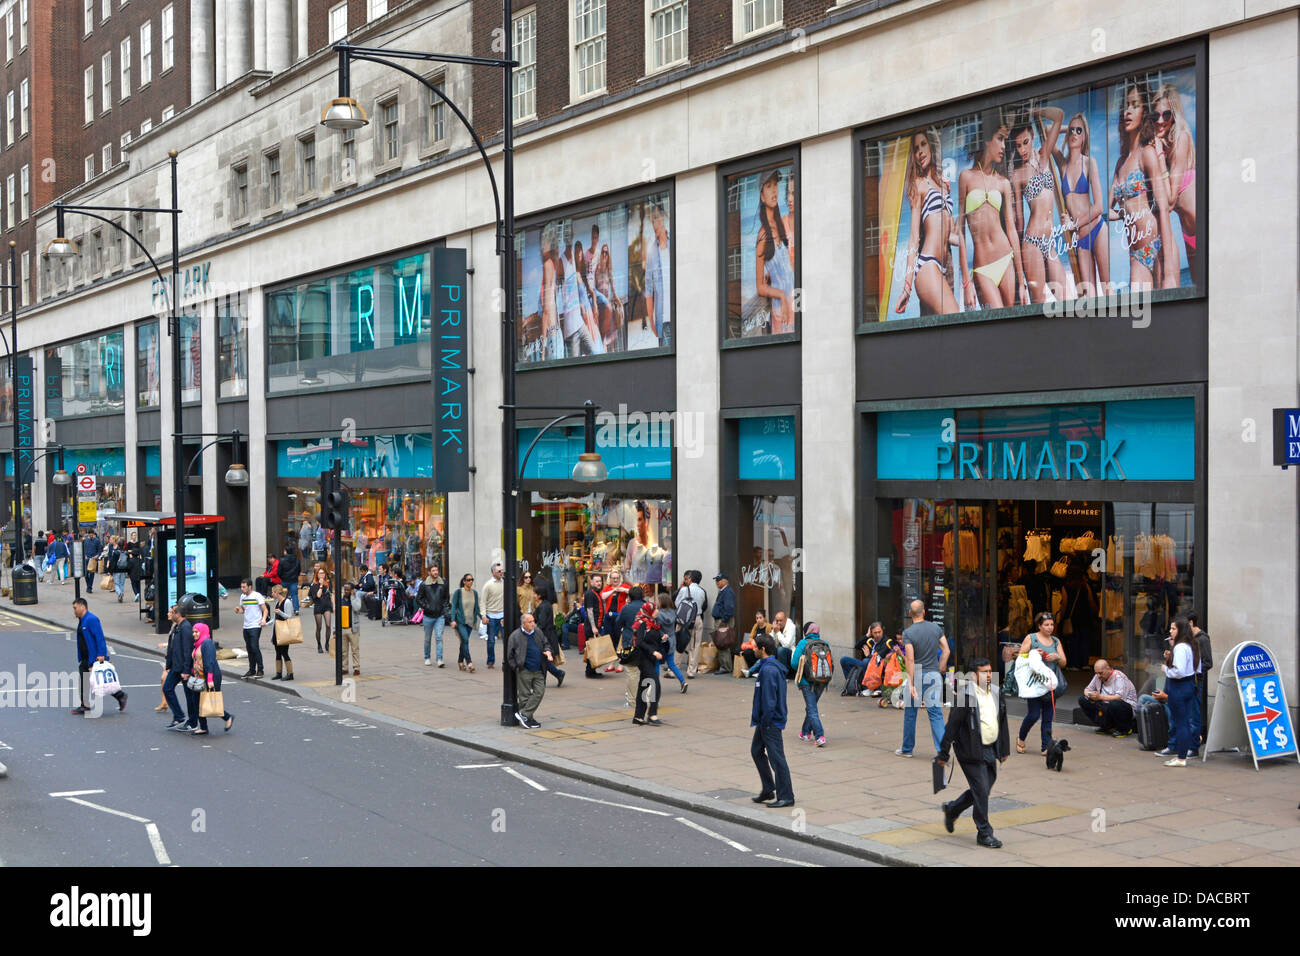 Un trottoir animé avec des acheteurs à l'extérieur de Primark vêtements de mode rapide magasin de détail avant et magasins fenêtres Oxford Street West End Londres Angleterre Royaume-Uni Banque D'Images